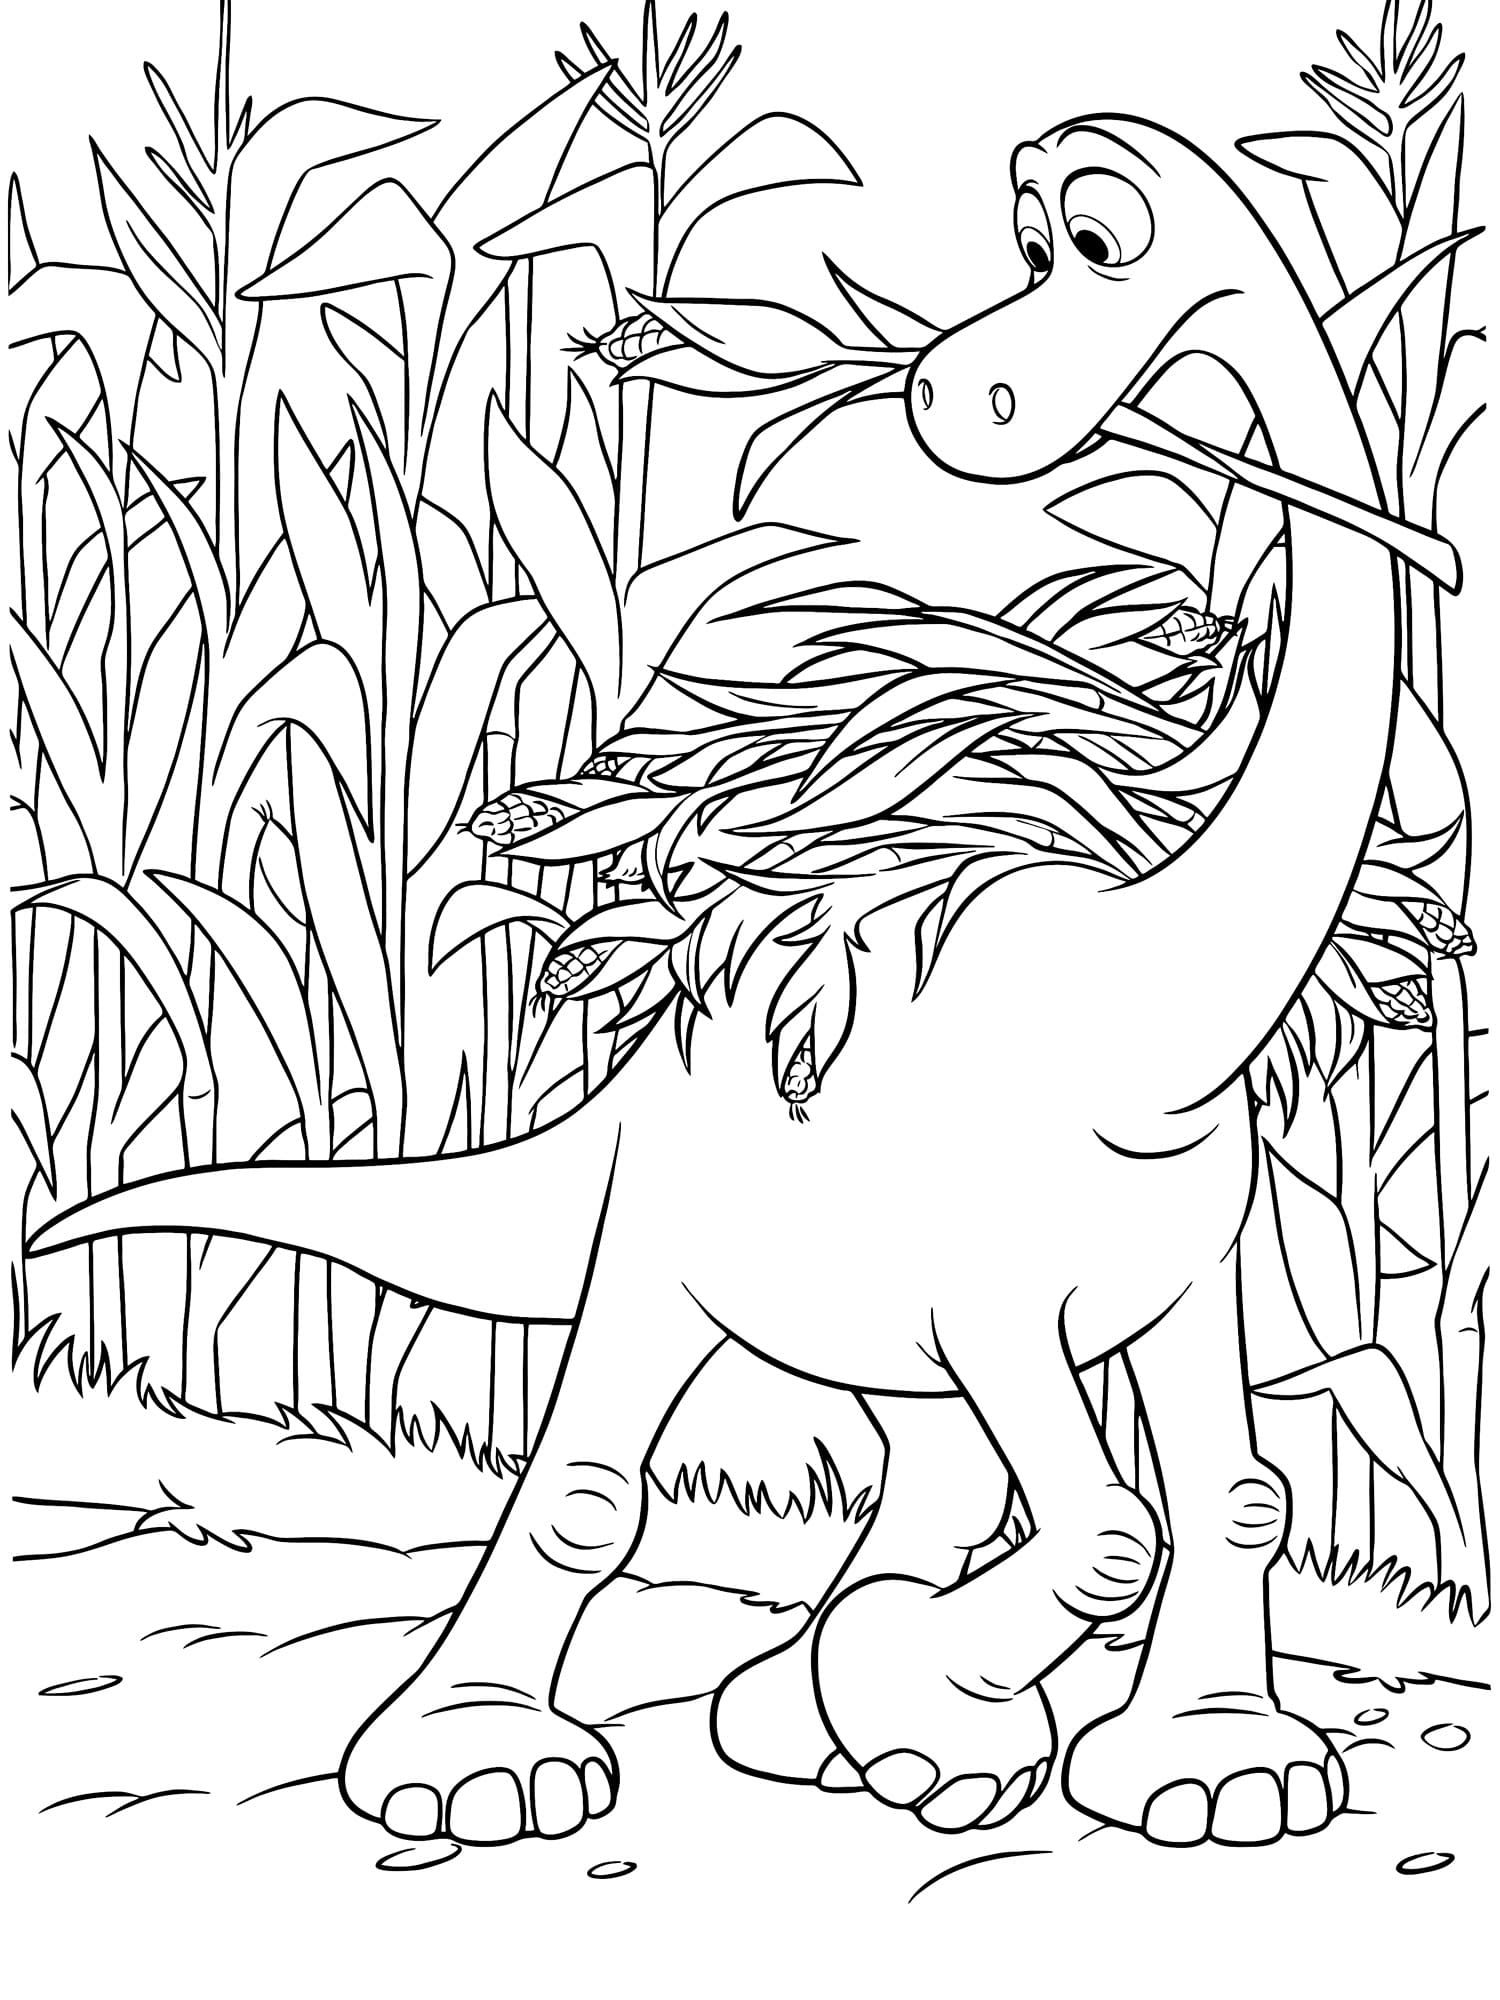 Målarbild Den Gode Dinosaurien 6